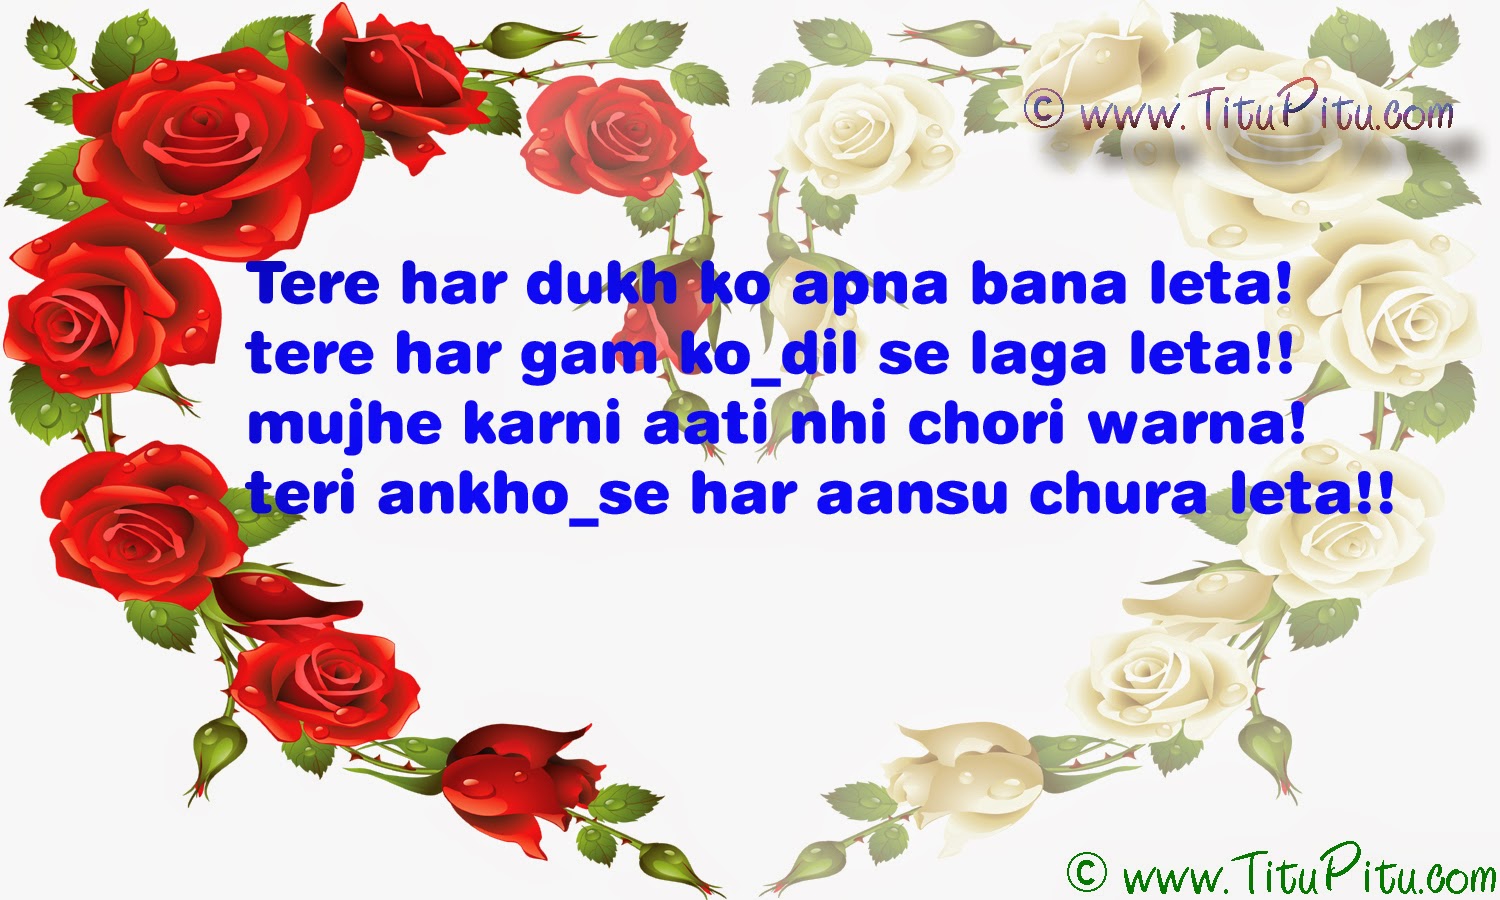 love-Shayari-in-Hindi